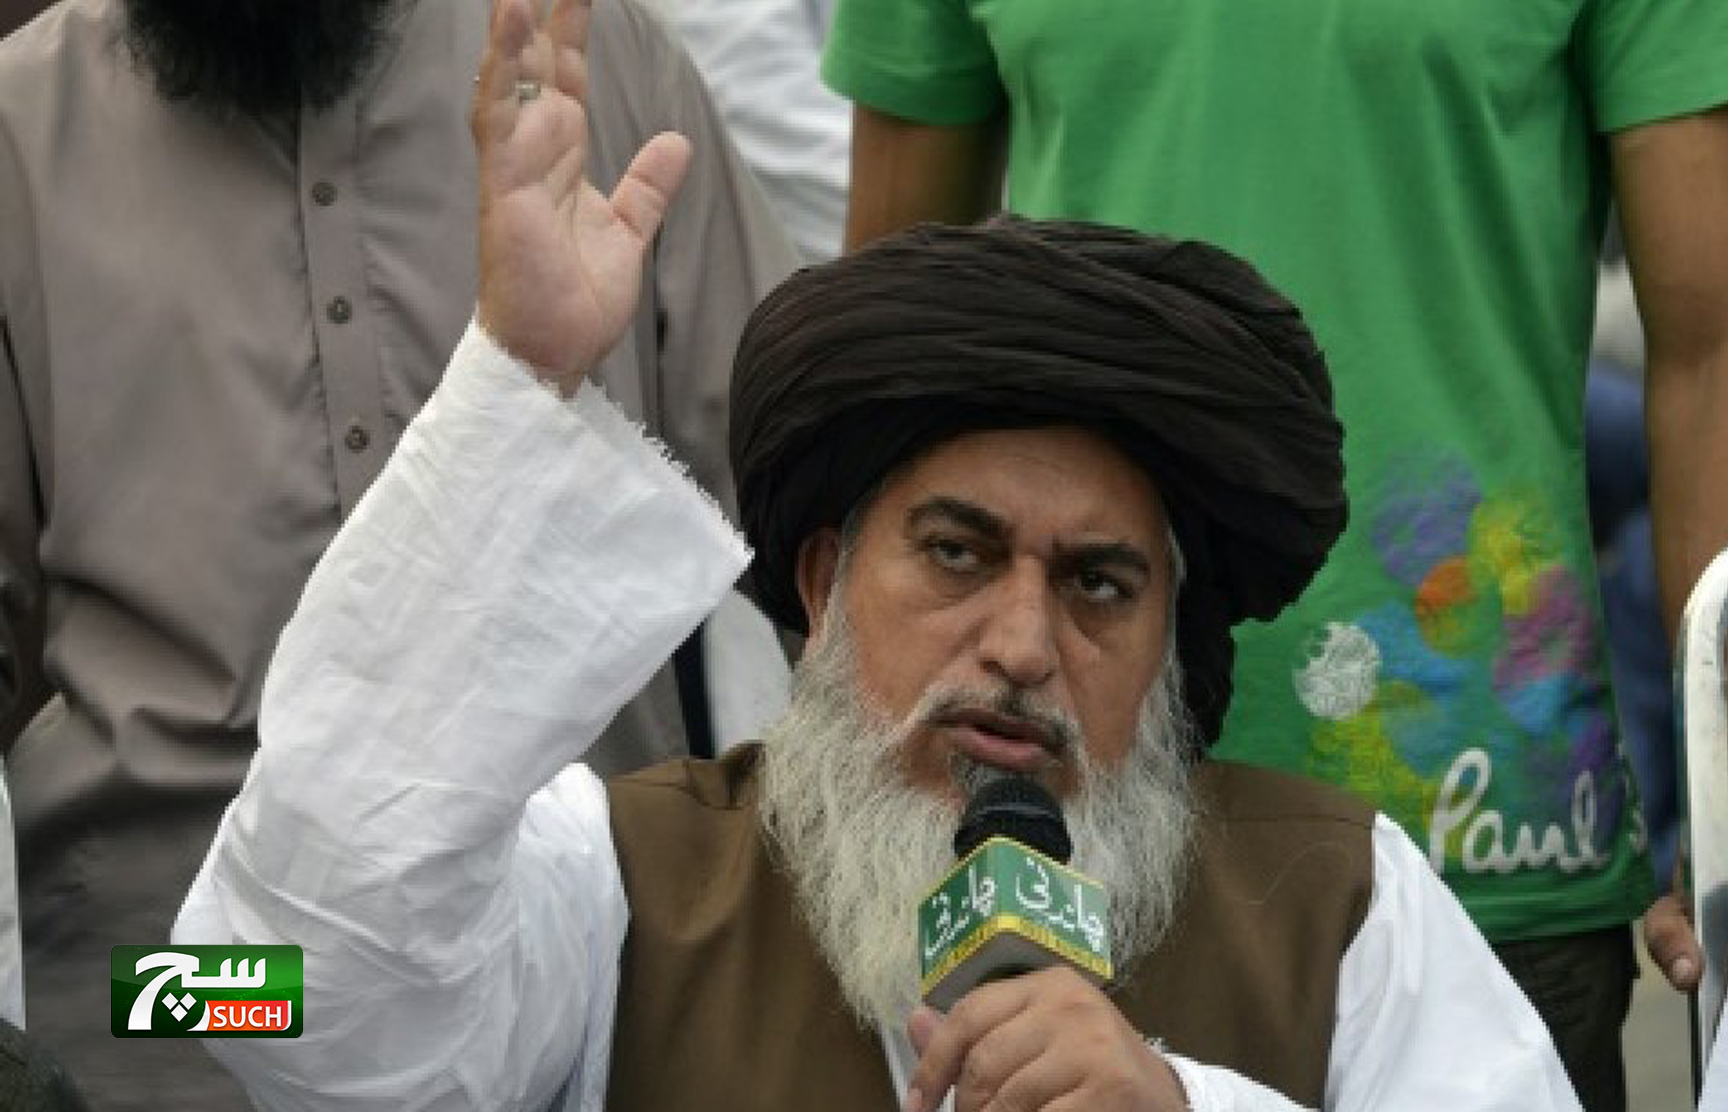 الافراج عن زعيم حزب إسلامي يقف وراء التظاهرات العنيفة ضد آسيا بيبي في باكستان